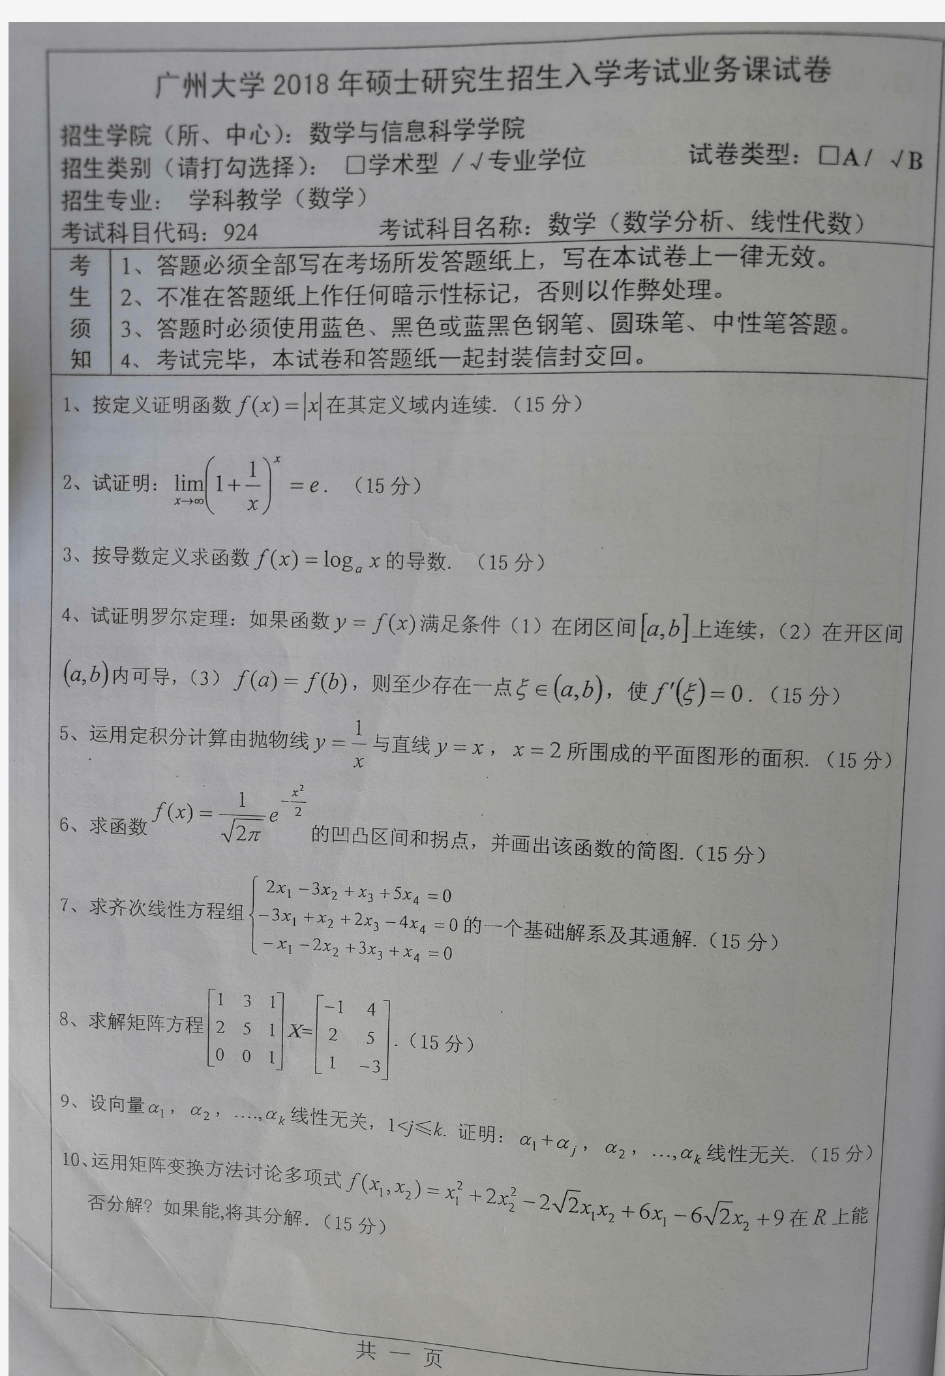 广州大学数学(数学分析、线性代数)2010-2019年考研初试真题